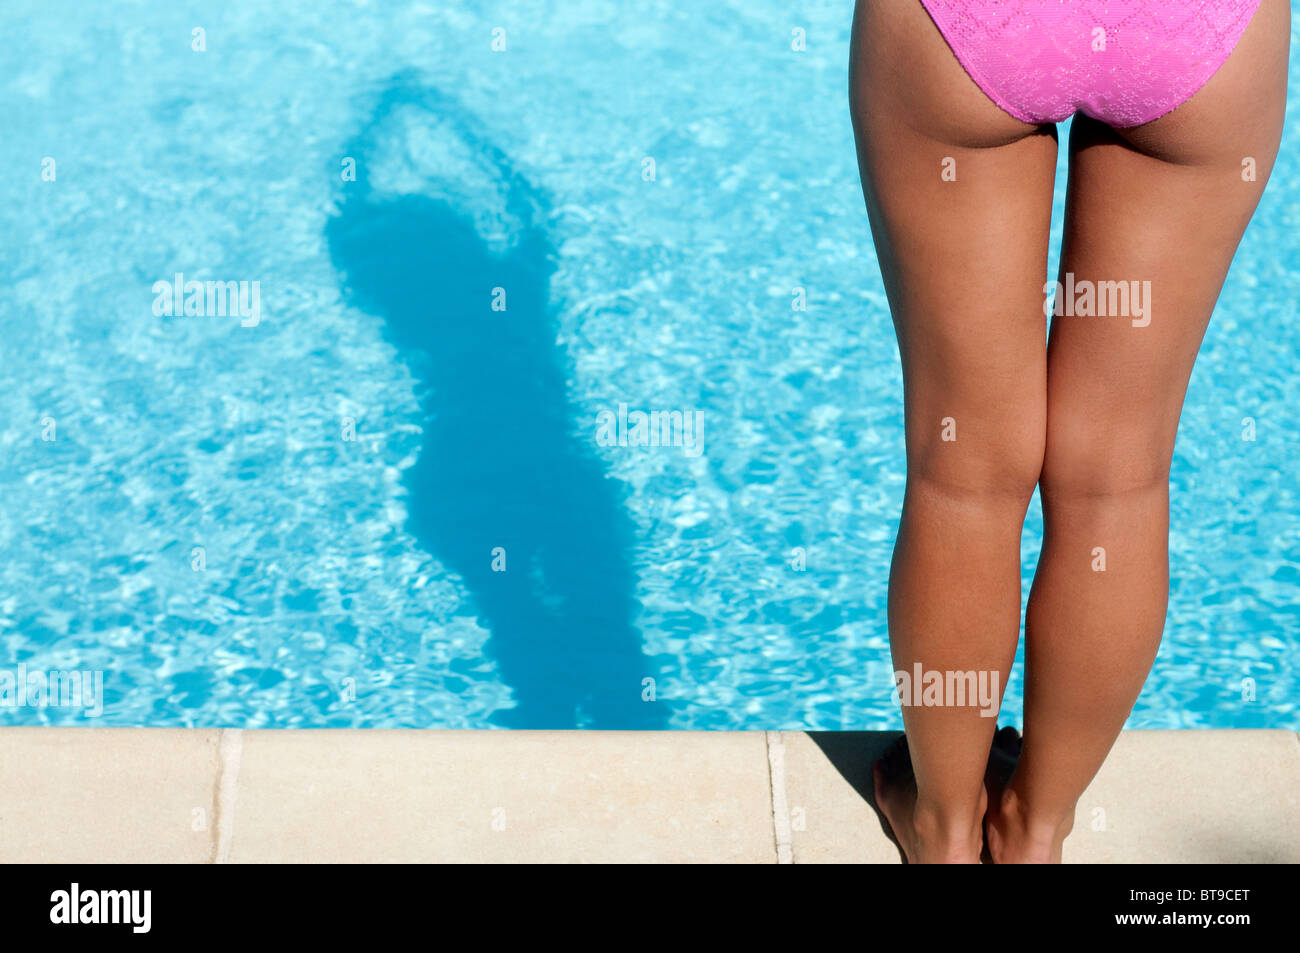 Une jeune femme en bikini rose debout au bord d'une piscine, vue arrière Banque D'Images